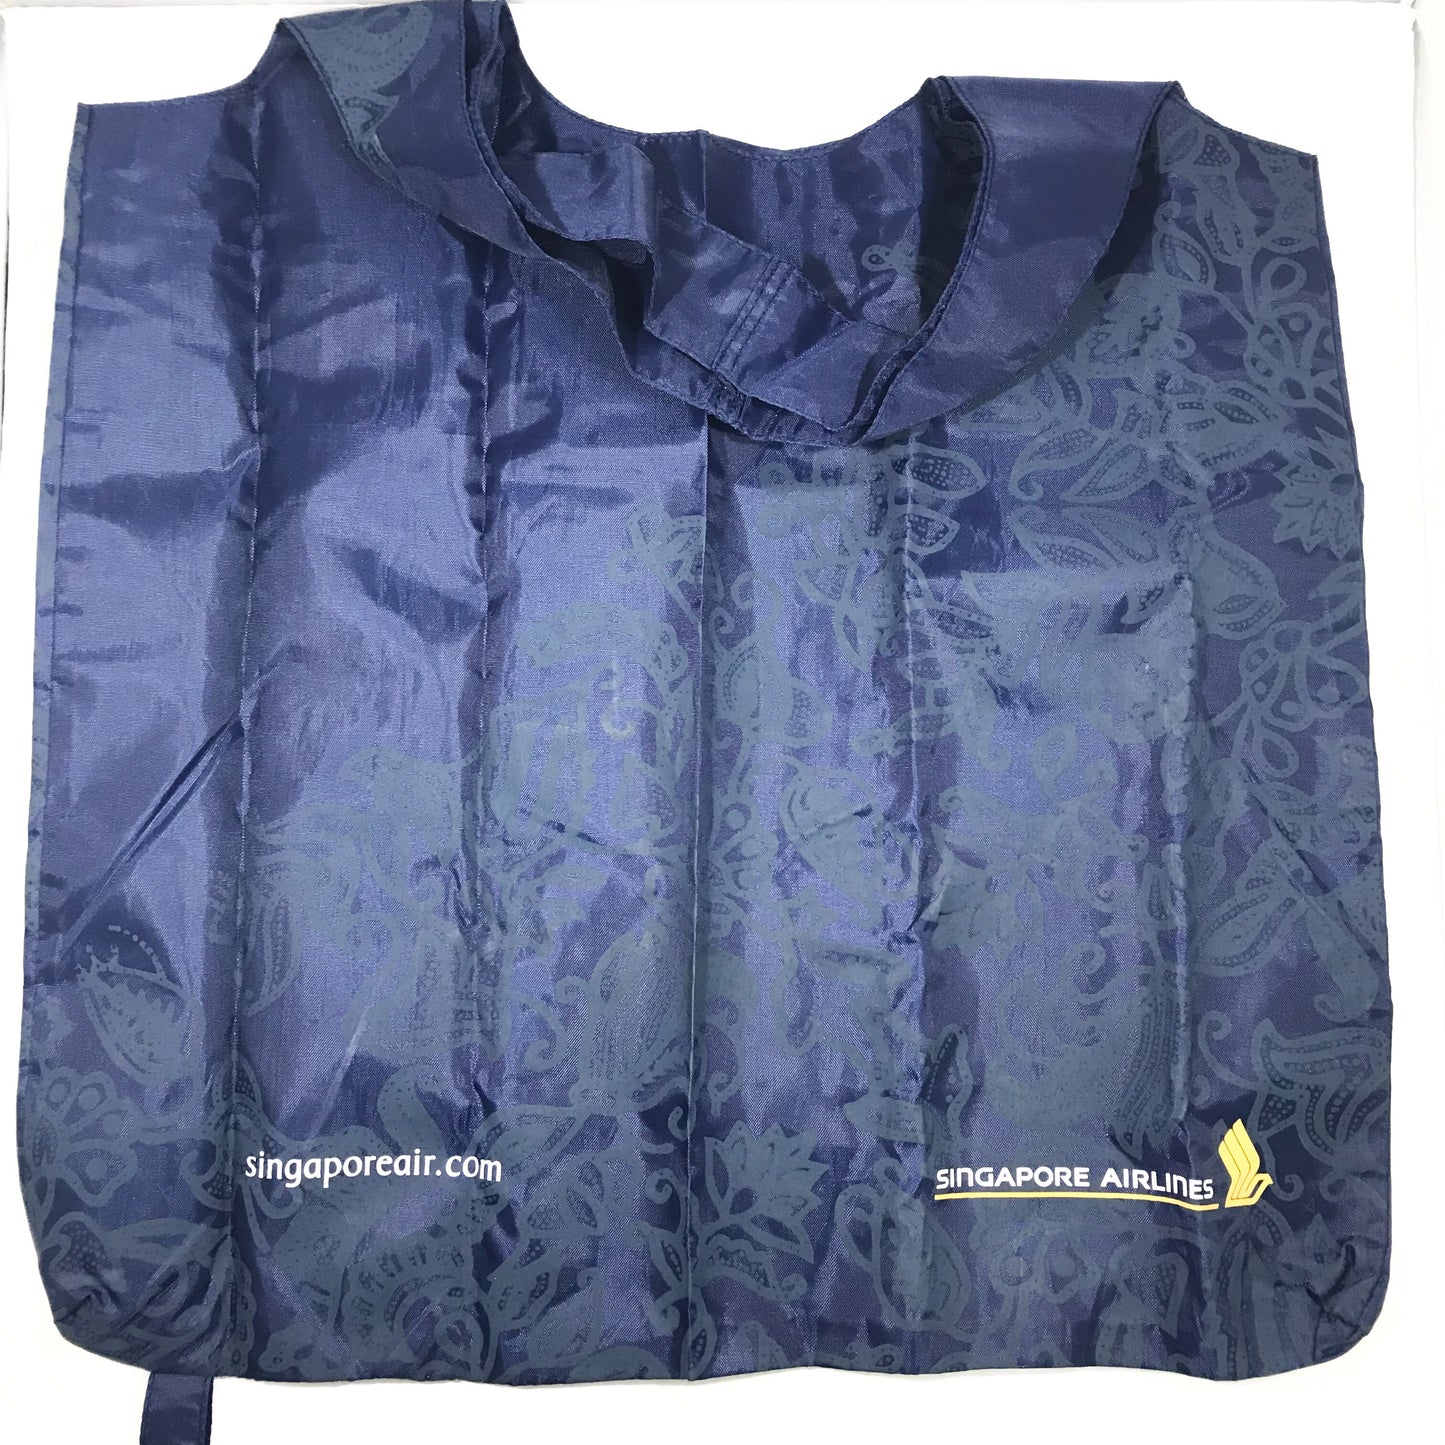 Customised Foldable Bag